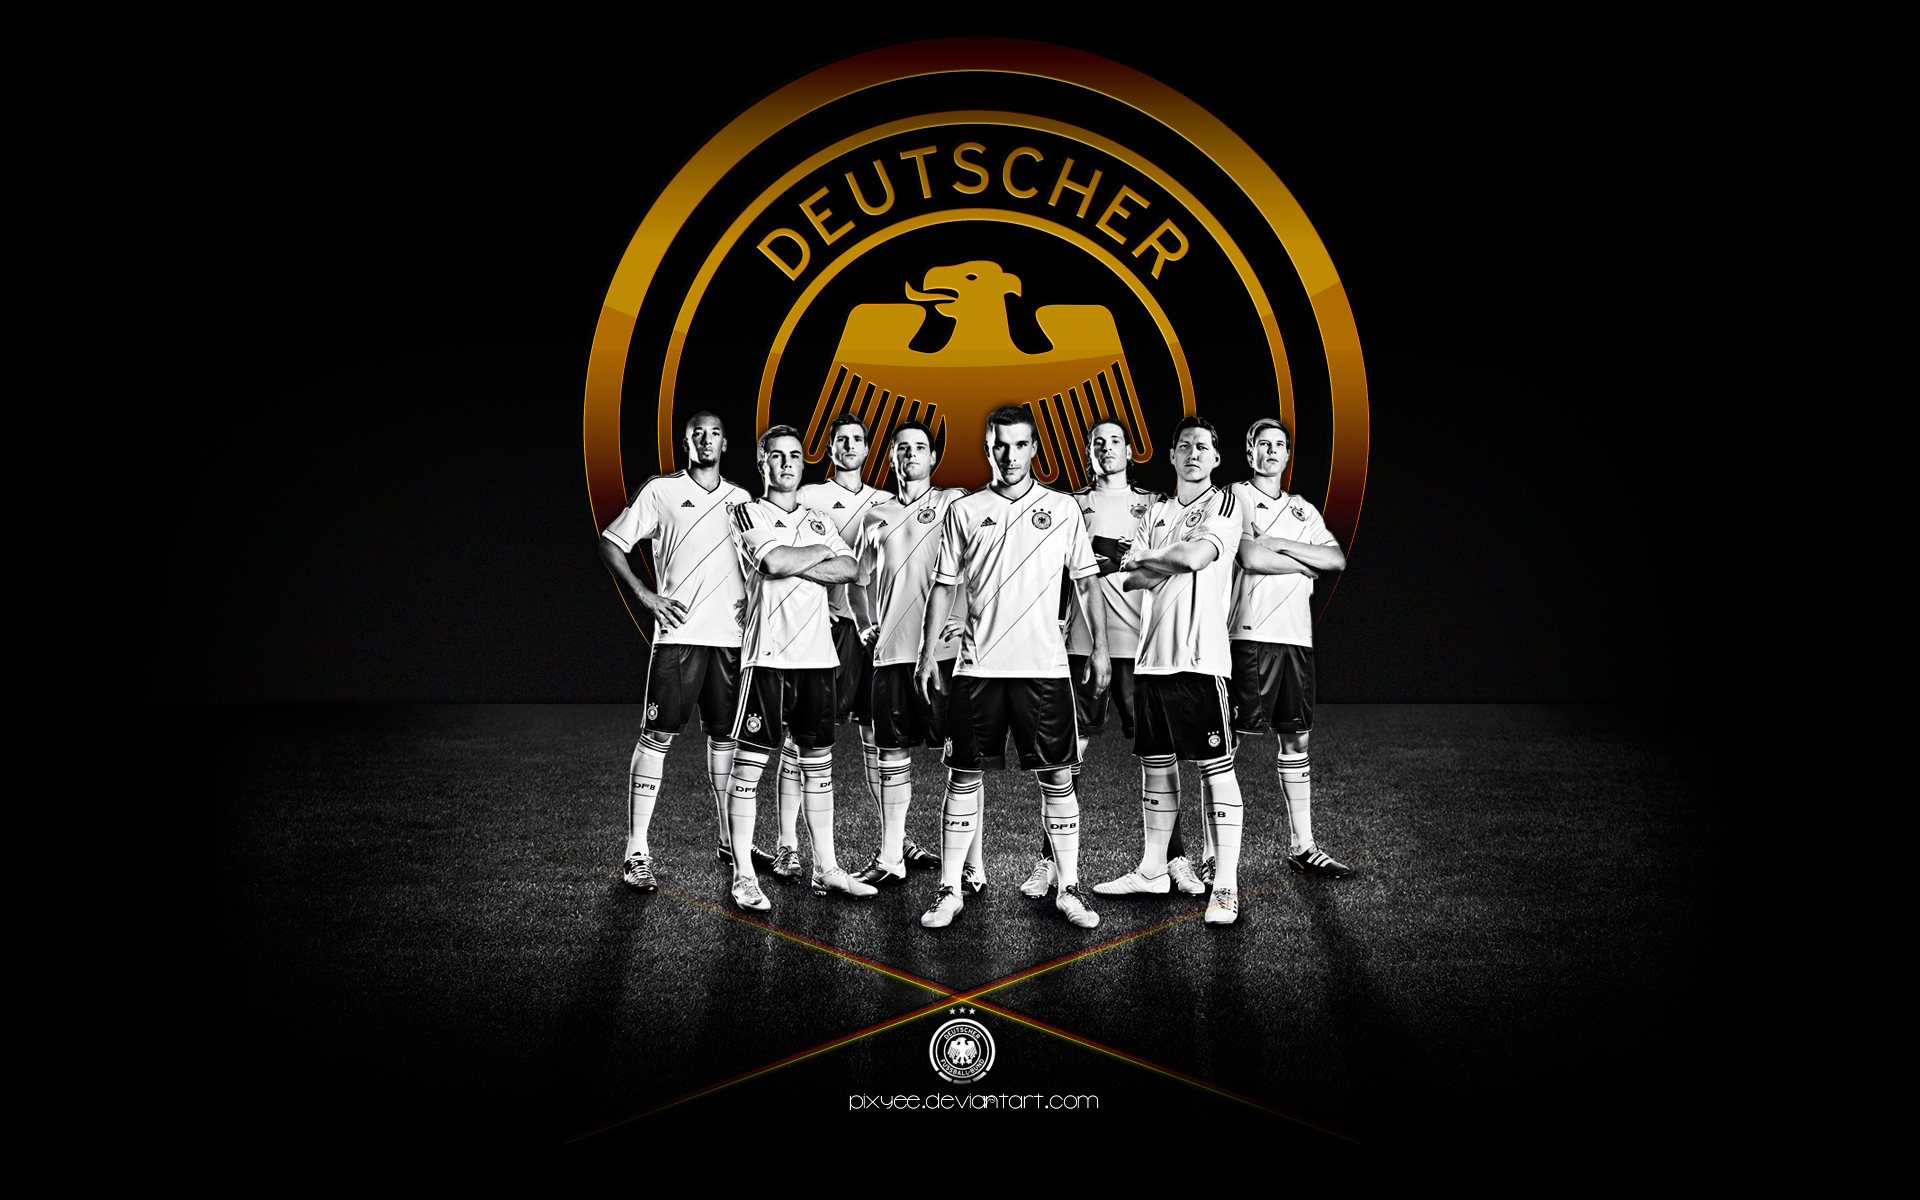 Deutscher Fussball Bund Wallpaper Germany By Pixyee On